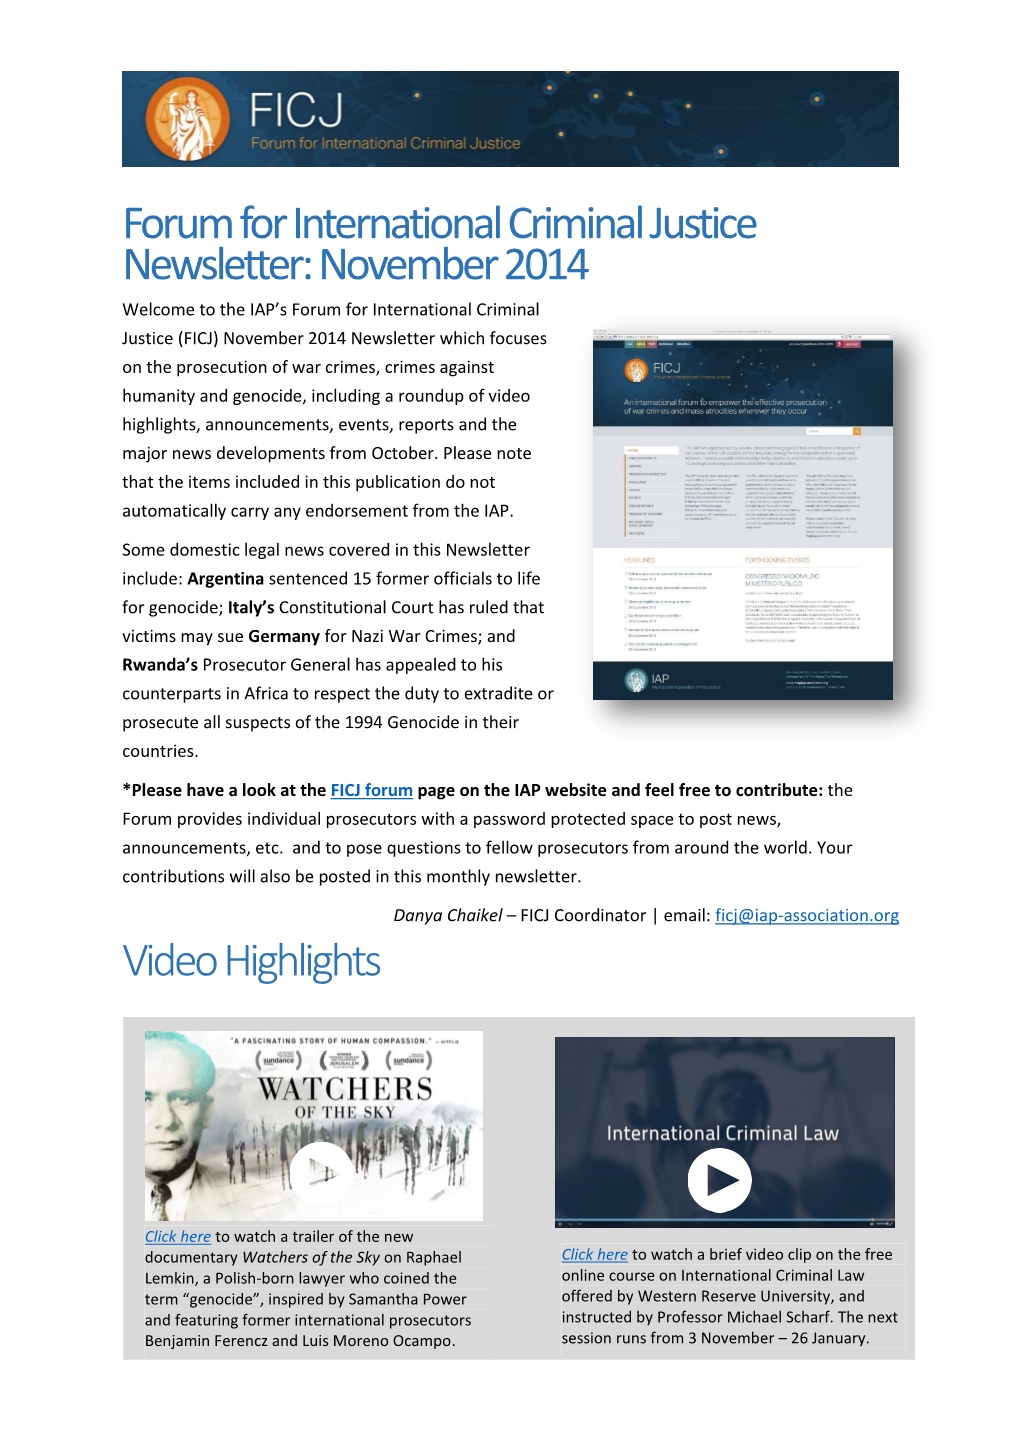 Forum for International Criminal Justice Newsletter: November 2014